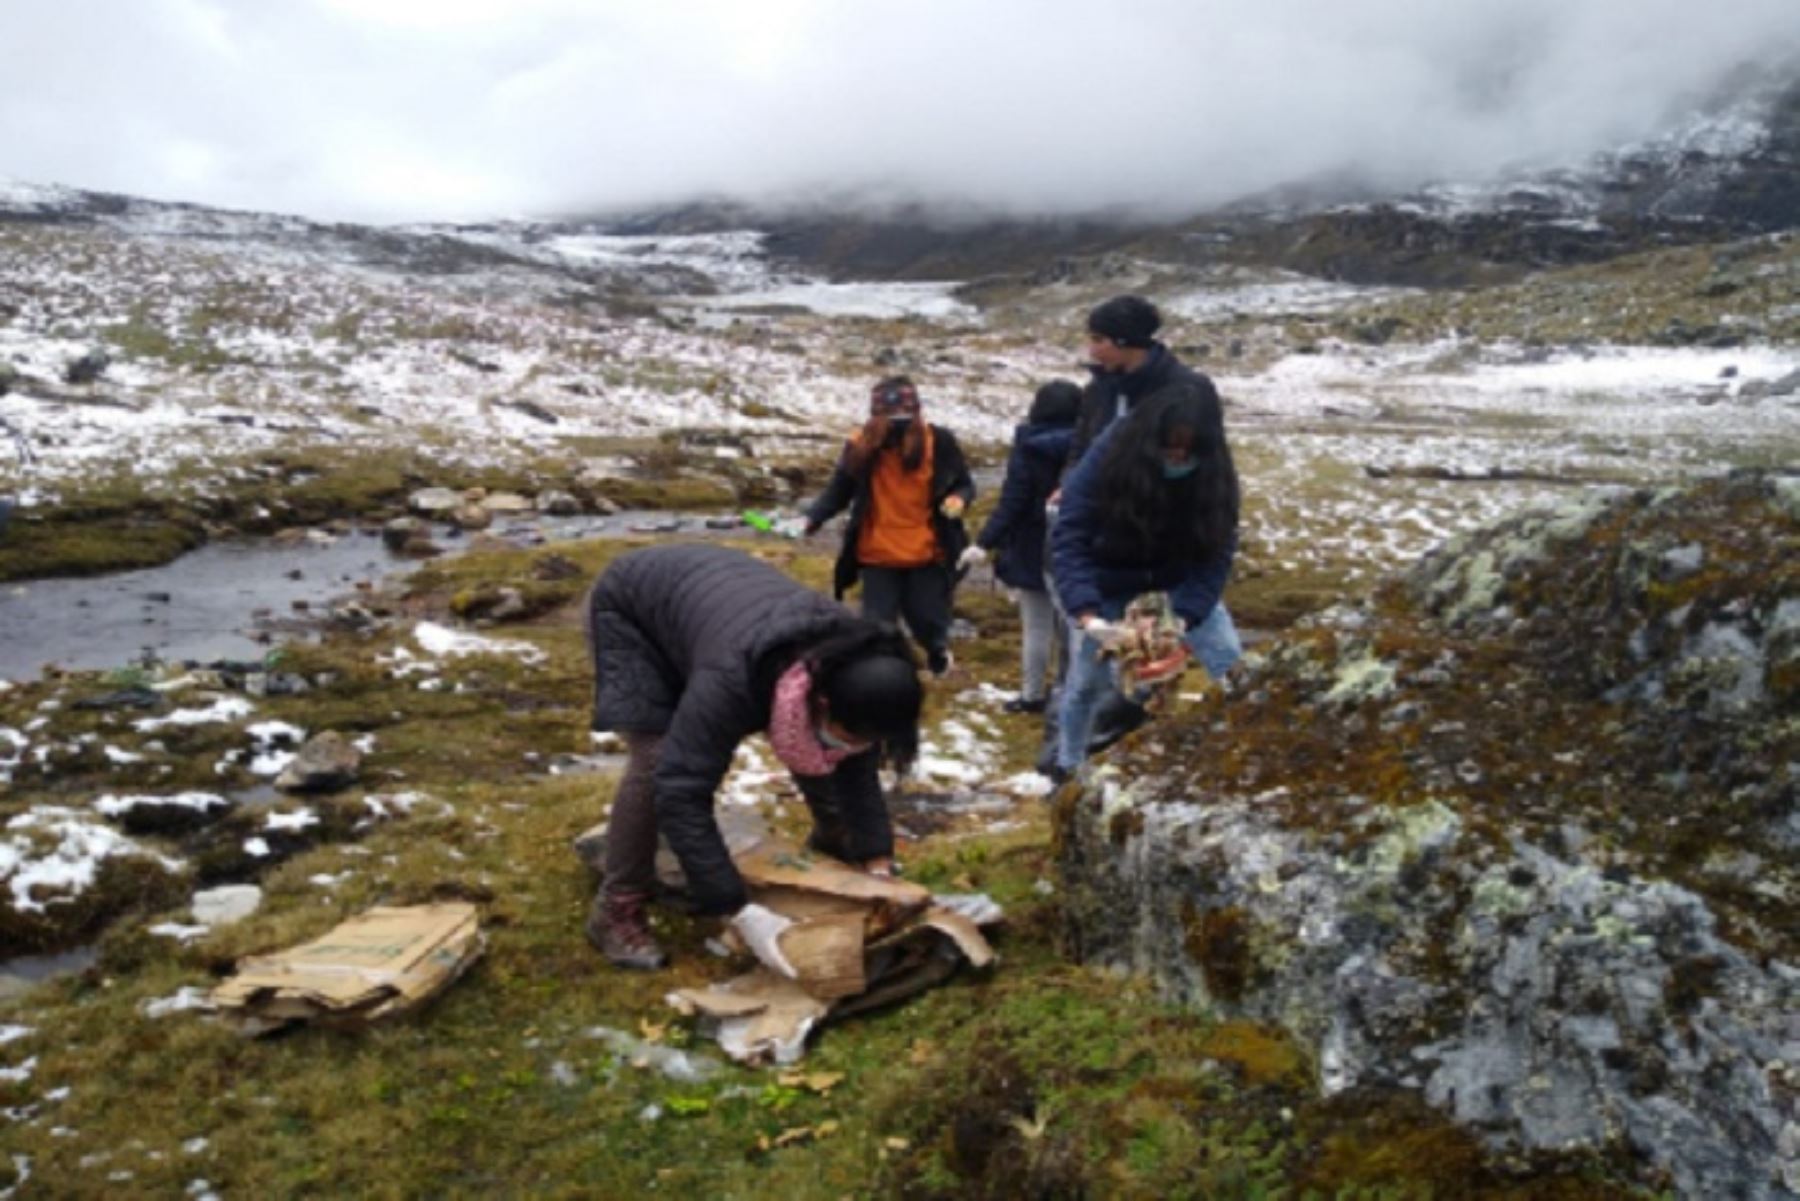 La Gerencia de Recursos Naturales y Gestión del Medio Ambiente del Gobierno Regional Junín promovió la actividad con el objetivo de proteger la ACR  Huaytapallanas, ecosistema que es la principal fuente de agua potable de la ciudad de Huancayo.Foto: Pedro Tinoco.